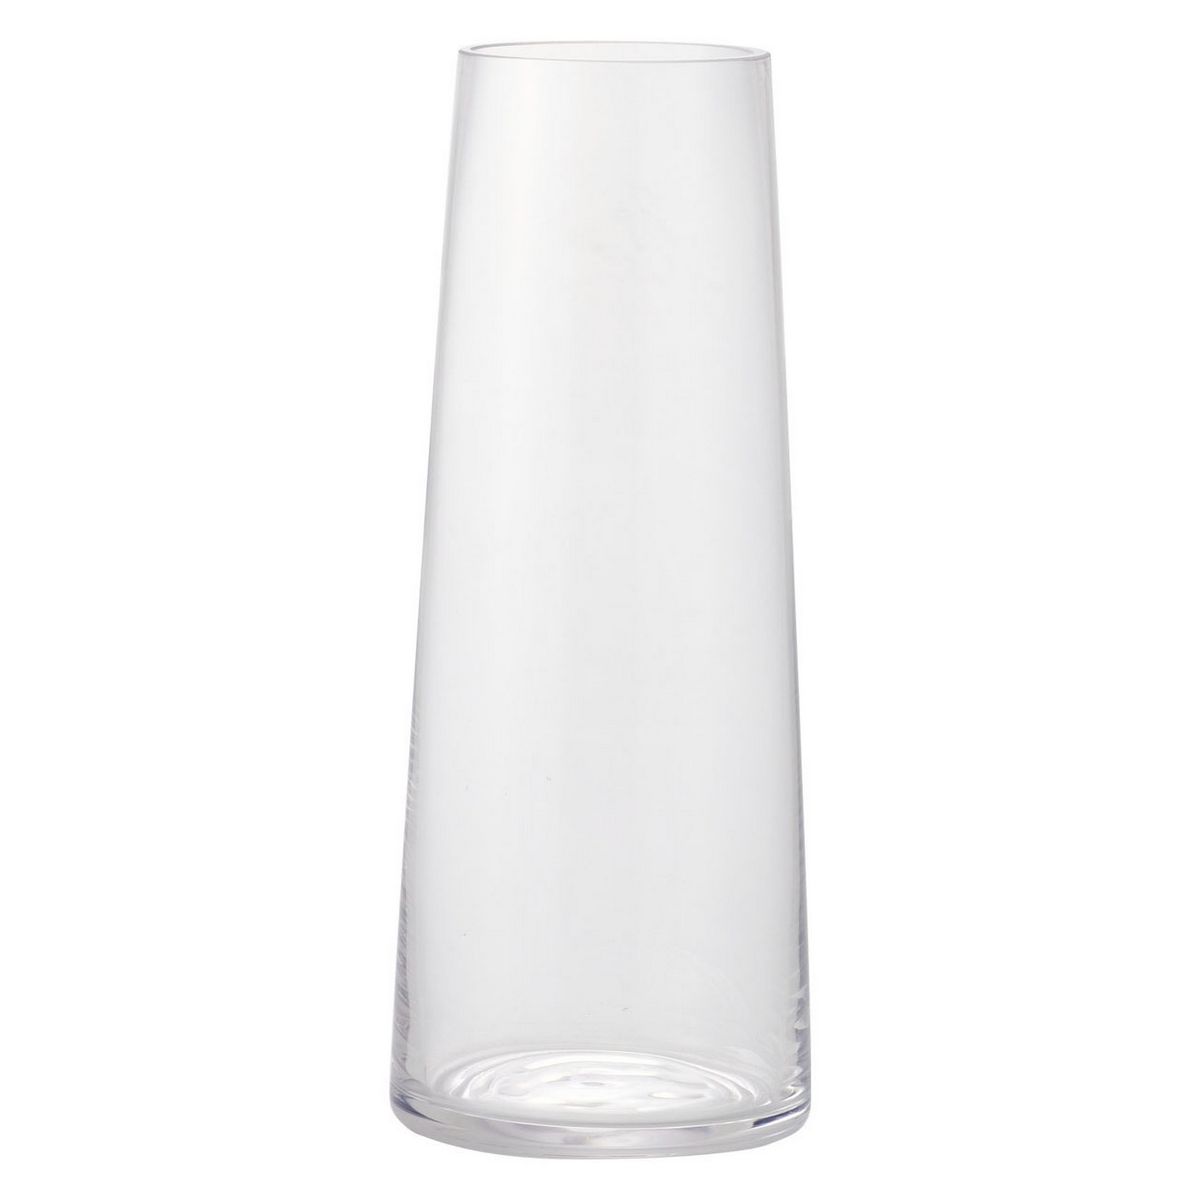 【サイズ】10.5φ27H（cm）材質：ガラス・ガラス製品に水を入れた場合は、破損防止のため花器の底に手を当ててお持ちください。・手作りのため透明度・厚み・重さなど個々にばらつきがある場合があります。また、製造上の気泡・流れ模様線が入る場合がありますが、強度には問題ありません。商品によっては不純物の混入により黒い点が入っている場合があります。【お取り寄せ商品について】※こちらはお取り寄せ商品となります。現在メーカーデータ上在庫のあるものを掲載させて頂いておりますがメーカー実在庫の欠品等によりご注文いただいた後に欠品が発生する場合がございます。その場合にはメールにてご案内をさせて頂きます。/【VAR：76696】20230712new花器、リース 花器・花瓶 ガラス花器/